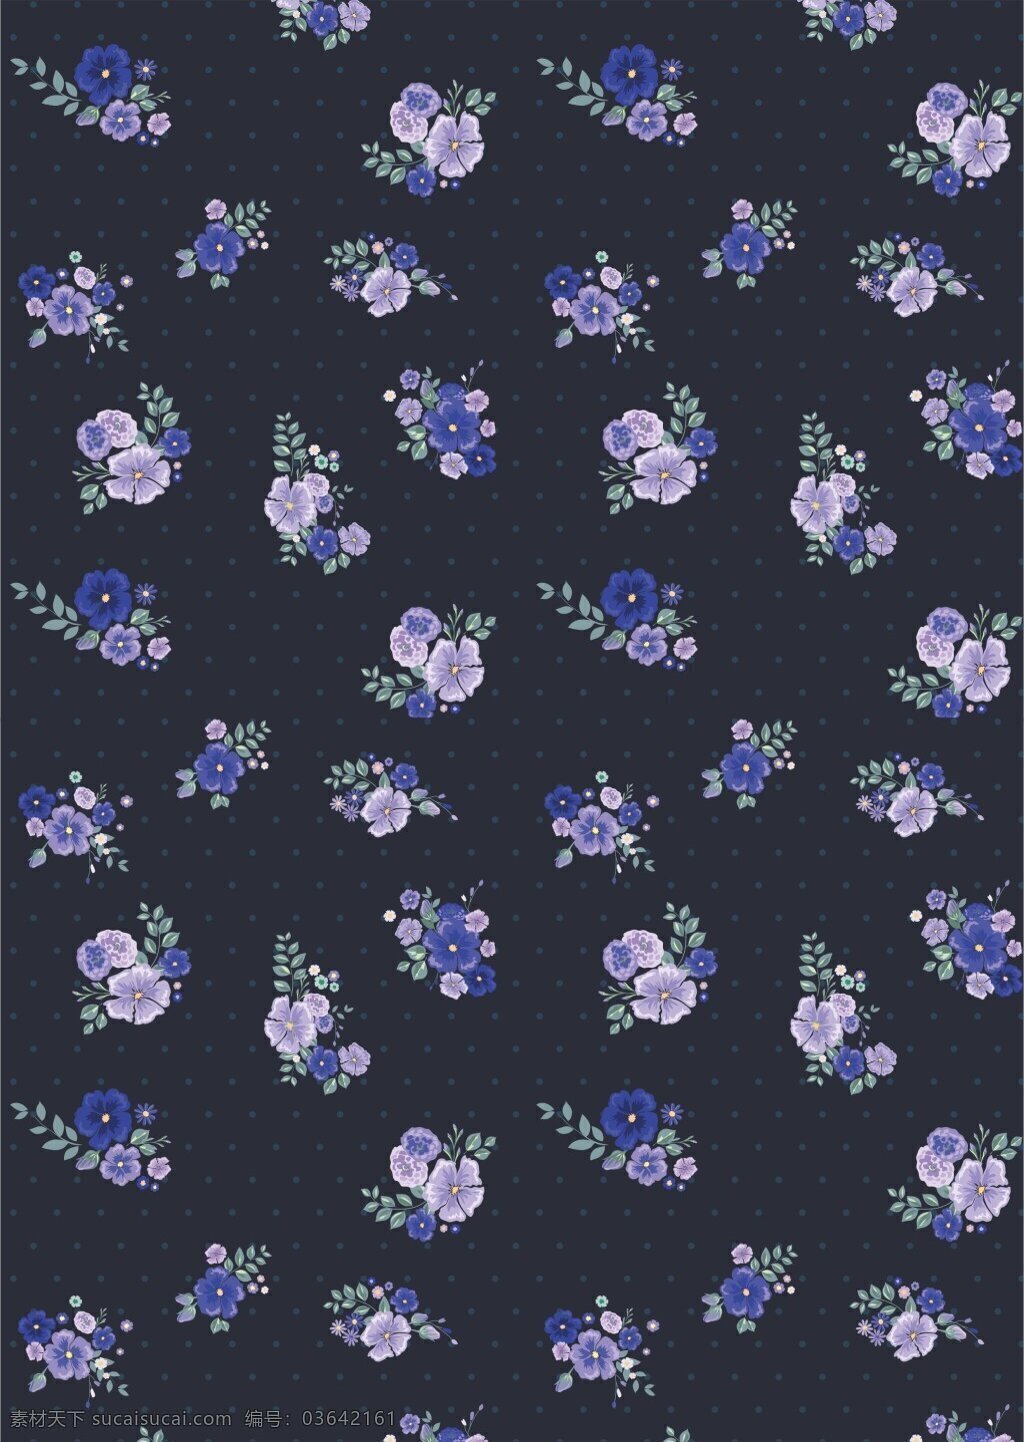 沉稳 浪漫 深色 底纹 植物 广告 背景 广告背景 蓝紫色花朵 深色底纹 植物背景